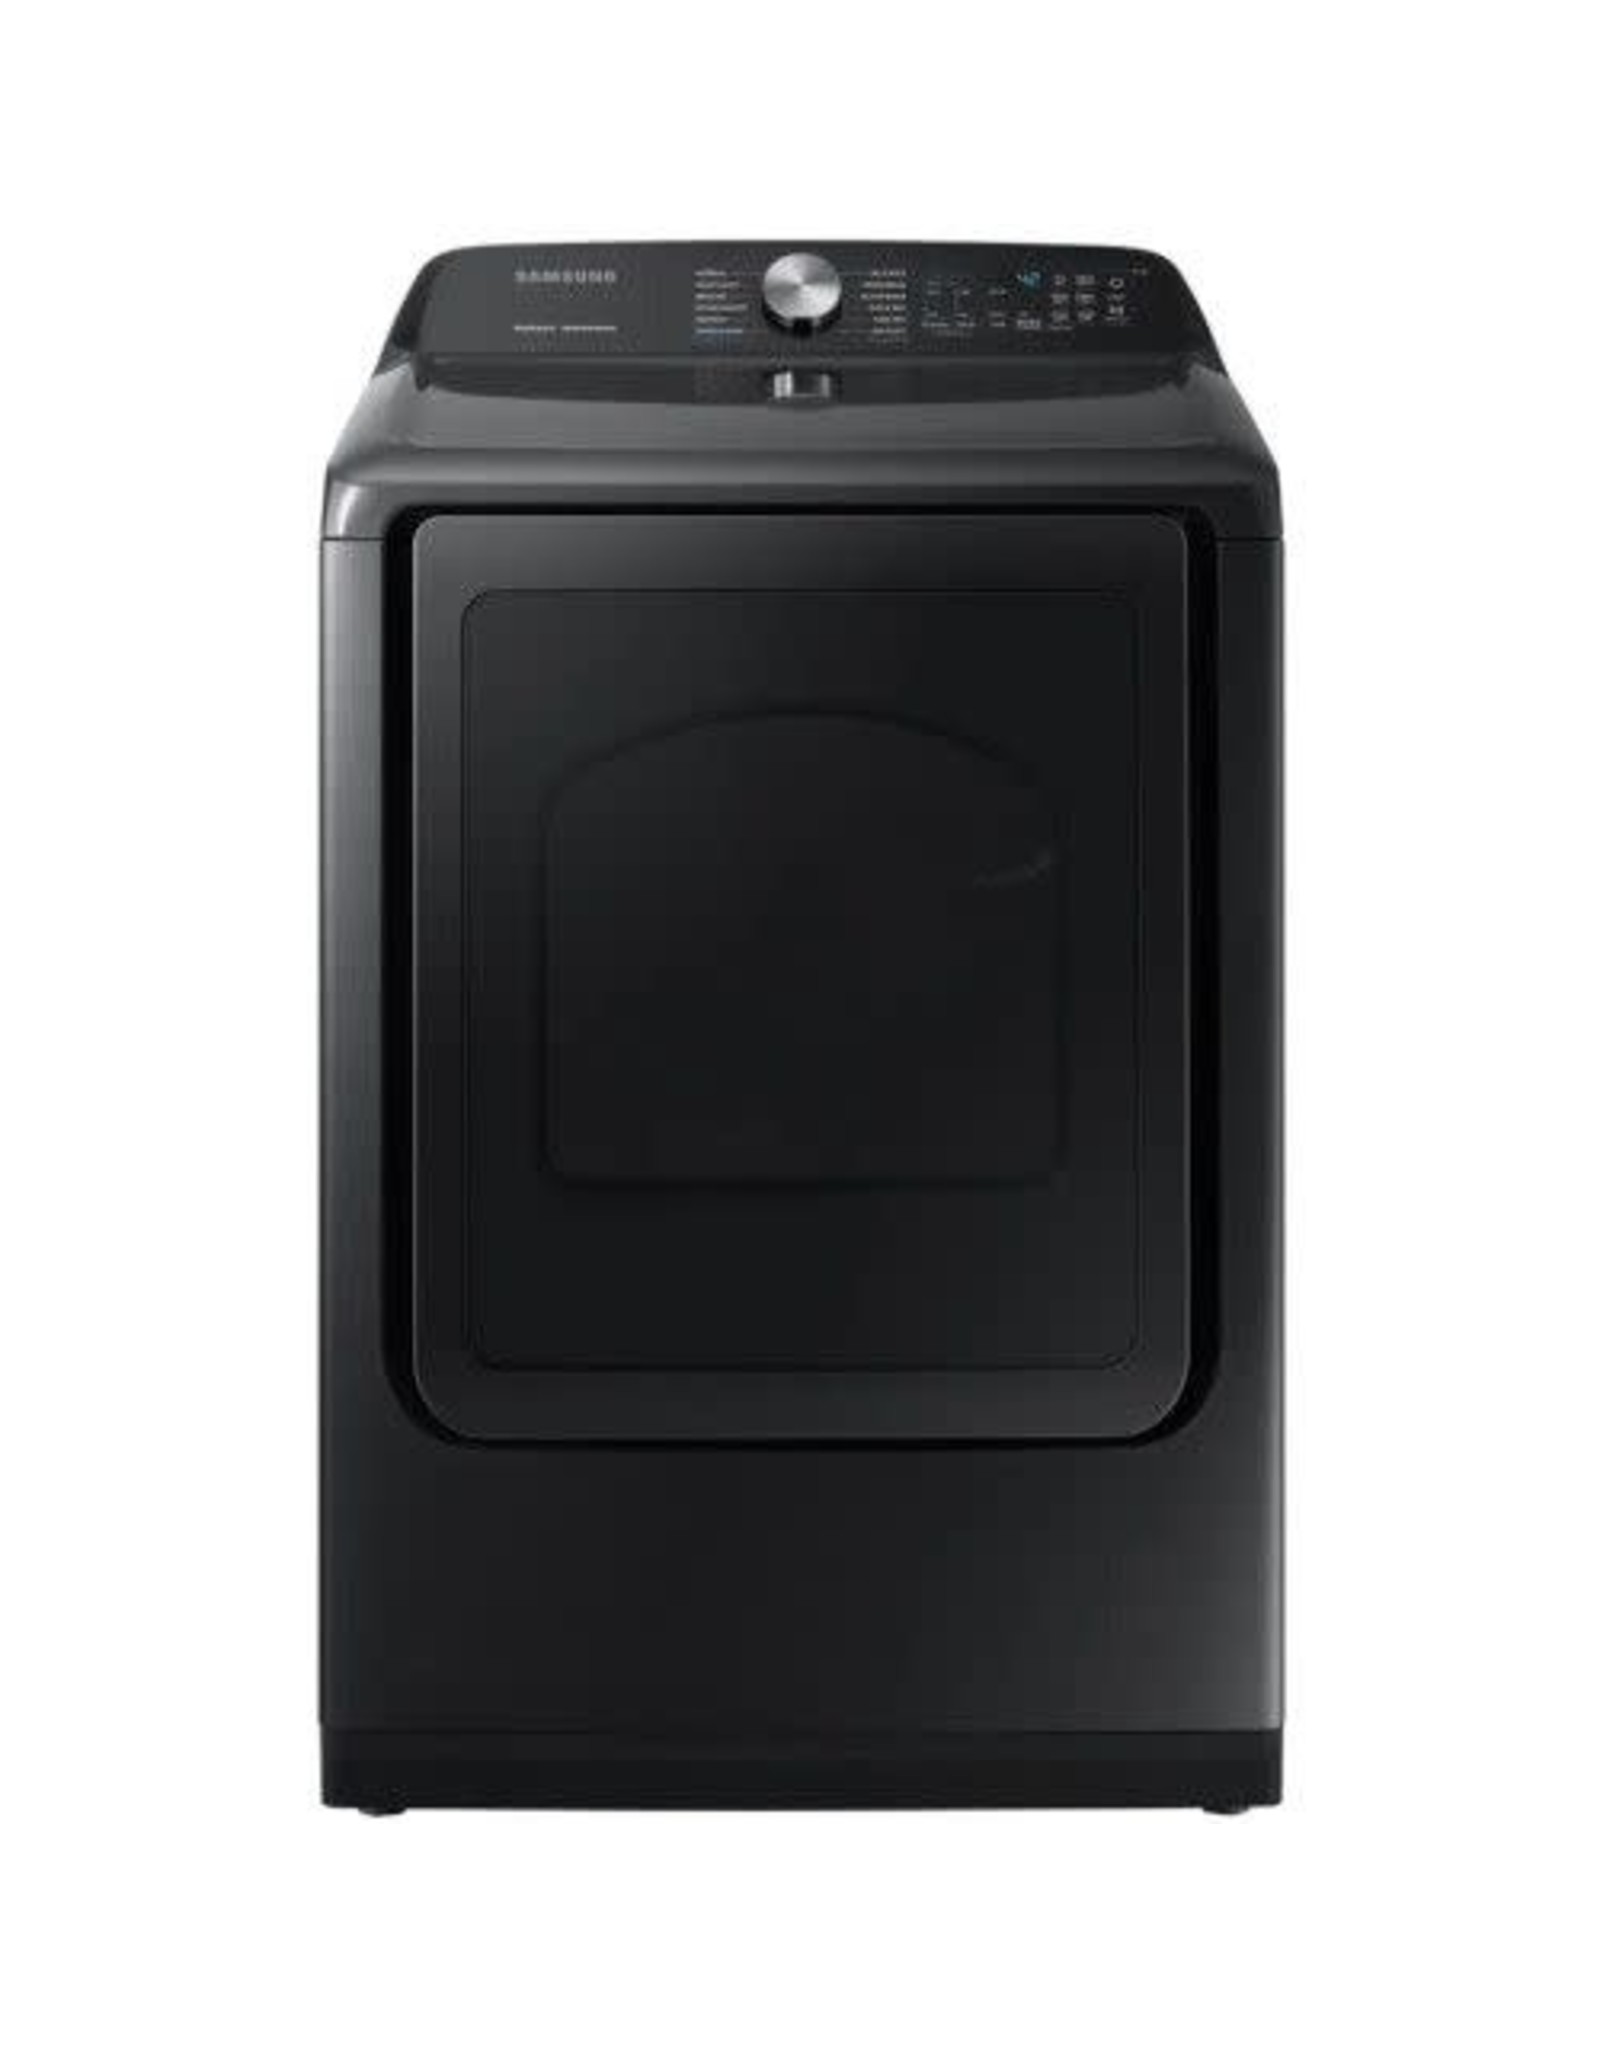 SAMSUNG ( DVE50R5400V Samsung 7.4 cu. ft. Fingerprint Resistant Black Stainless Electric Dryer with Steam Sanitize+